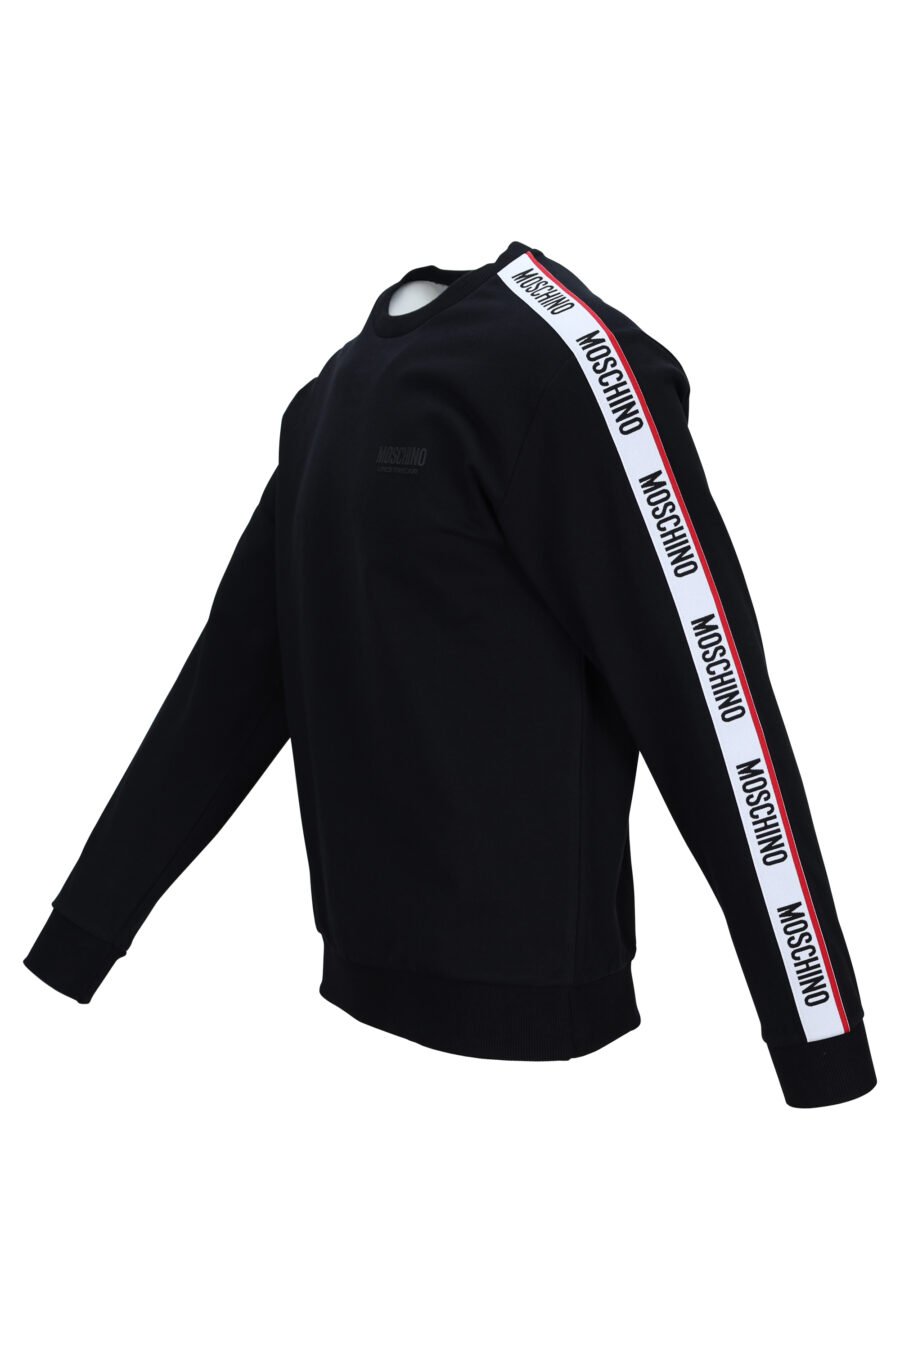 Schwarzes Sweatshirt mit Logoband an den Ärmelseiten - 667113028293 1